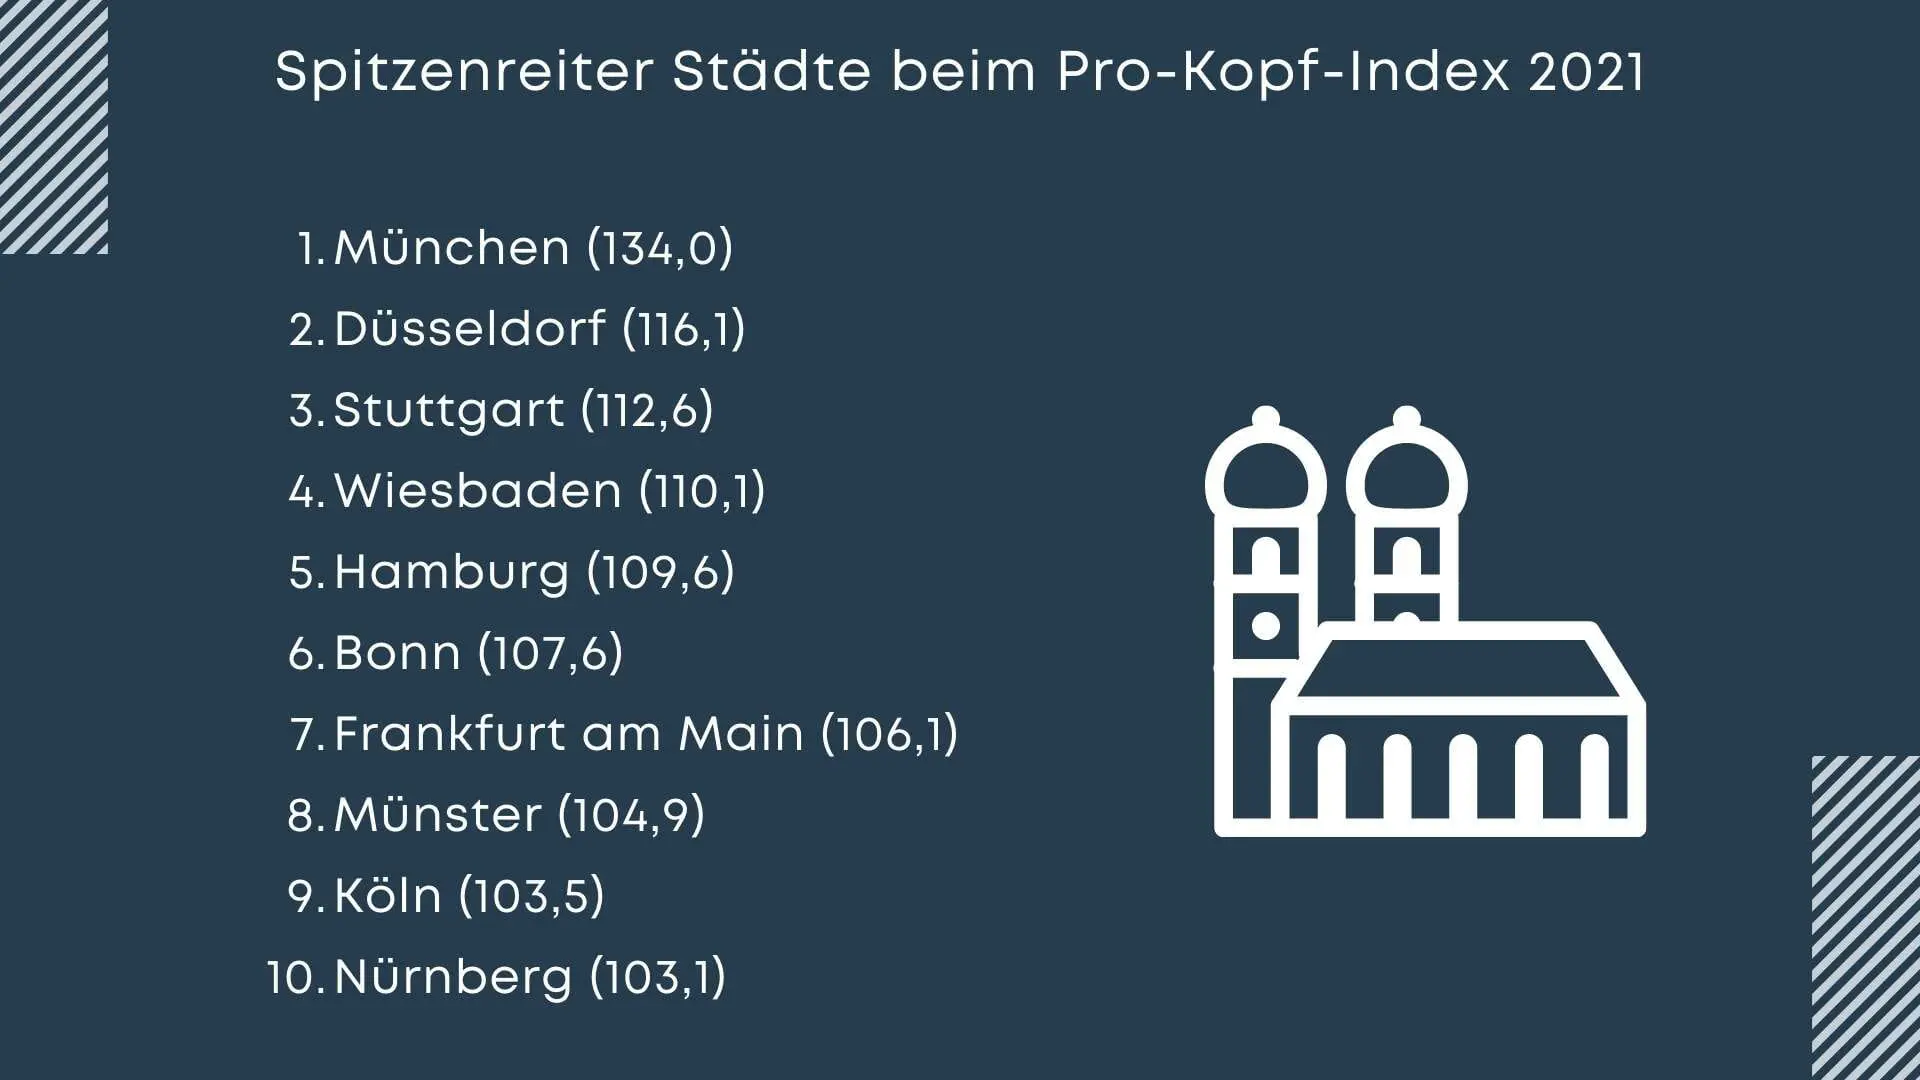 Pro-Kopf-Index 2021